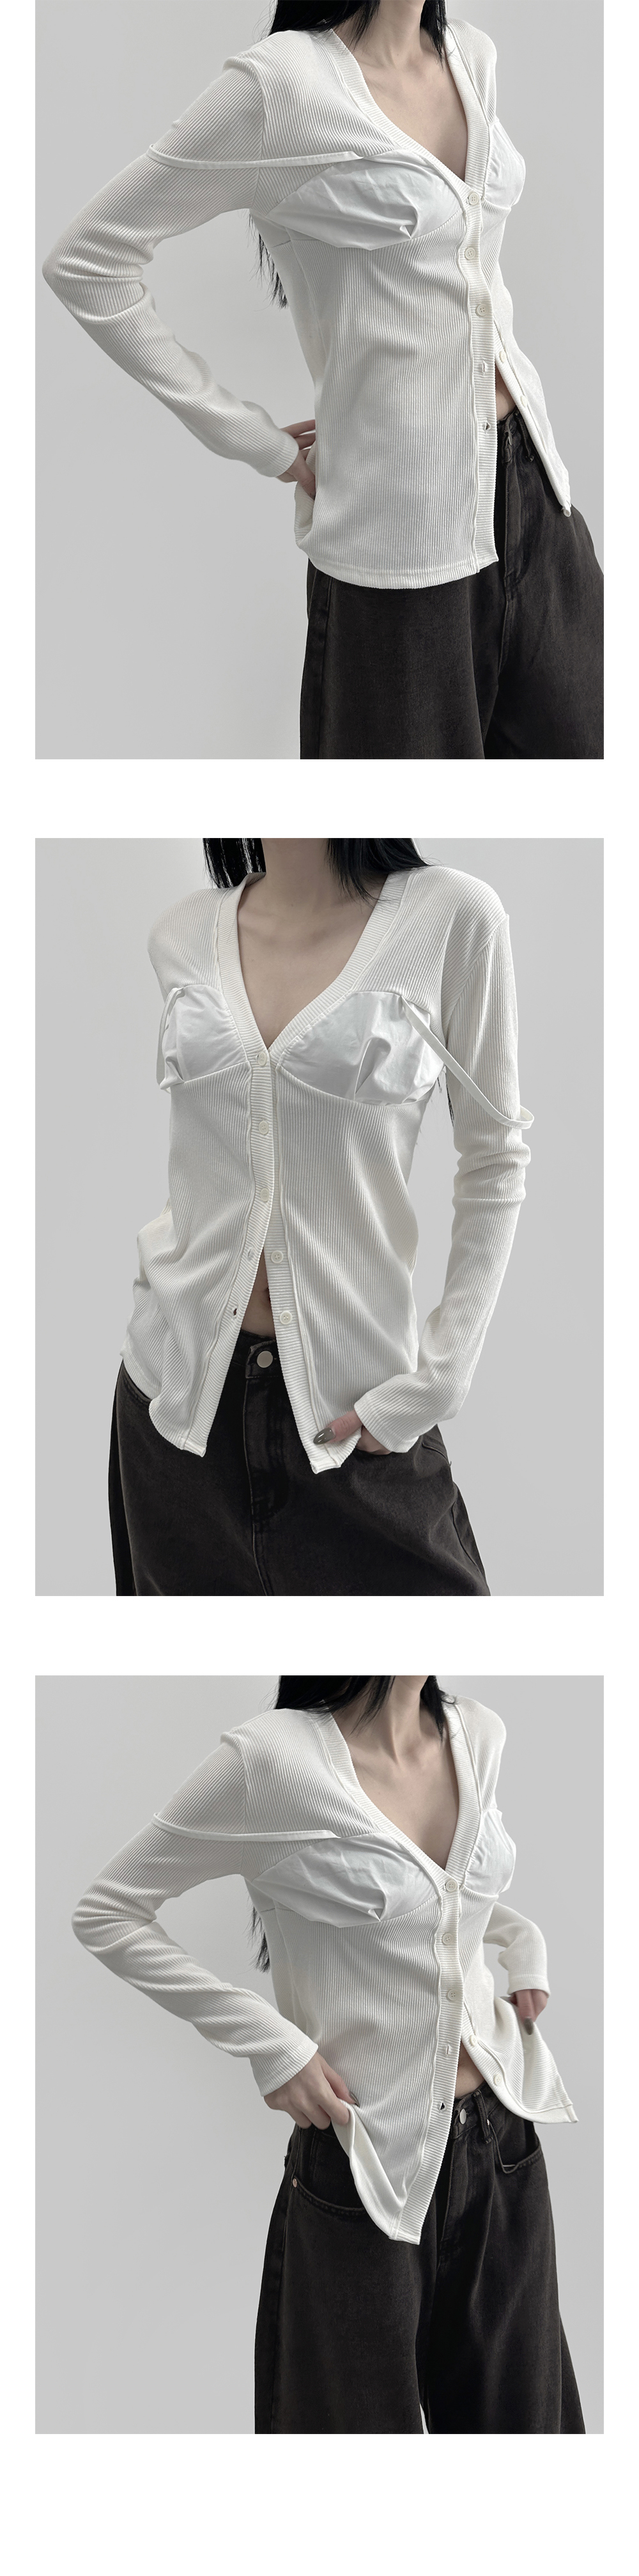 blouse detail image-S2L11